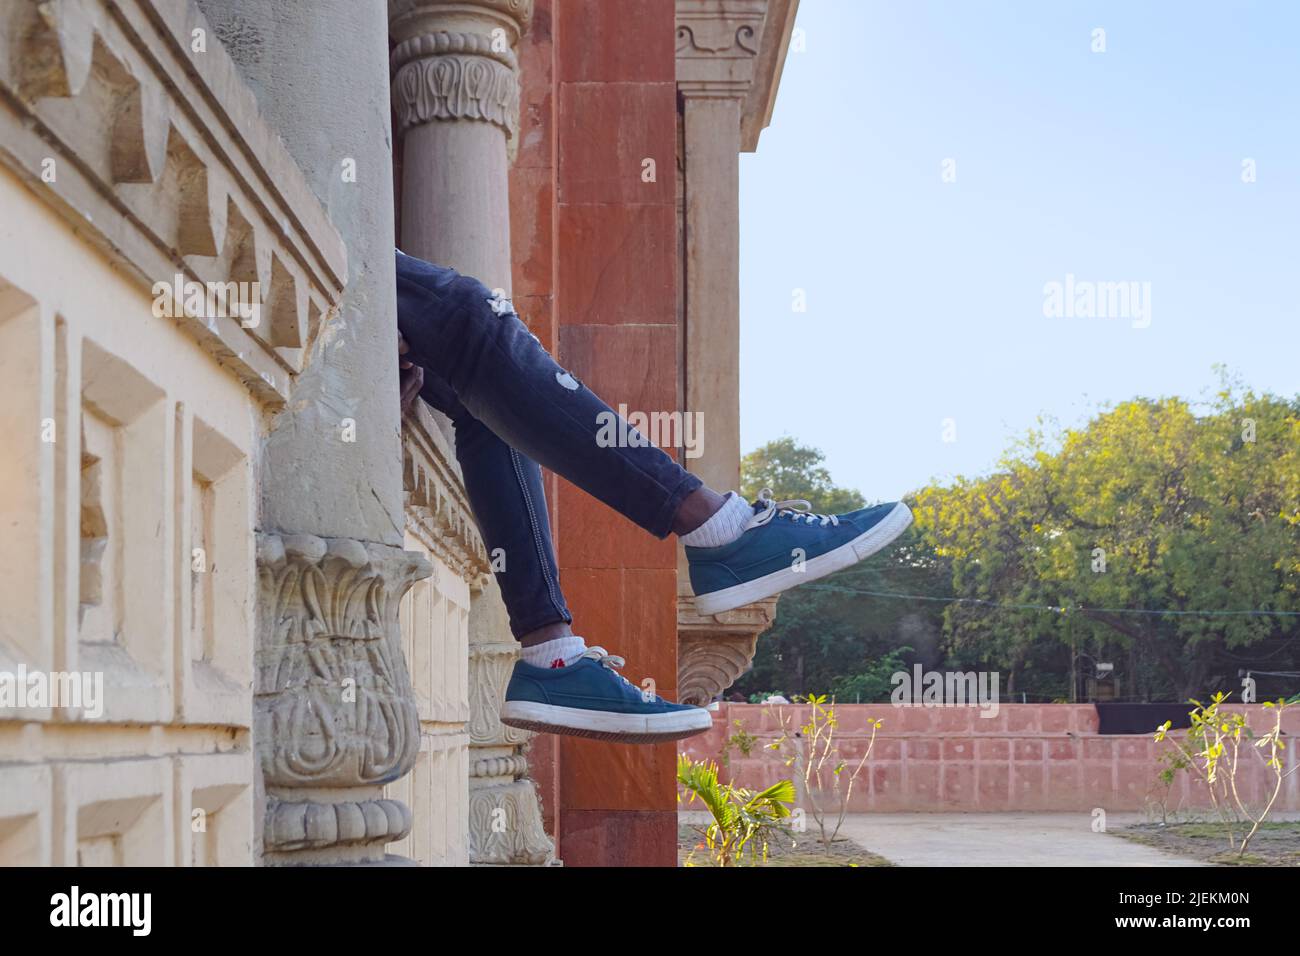 Eine Person Beine hängen vom Balkon. Person in der Stadt. Mahatma Gandhi Hall. Ghanta Ghar, Indore, Madhya Pradesh. Auch bekannt als King Edward Hall w Stockfoto